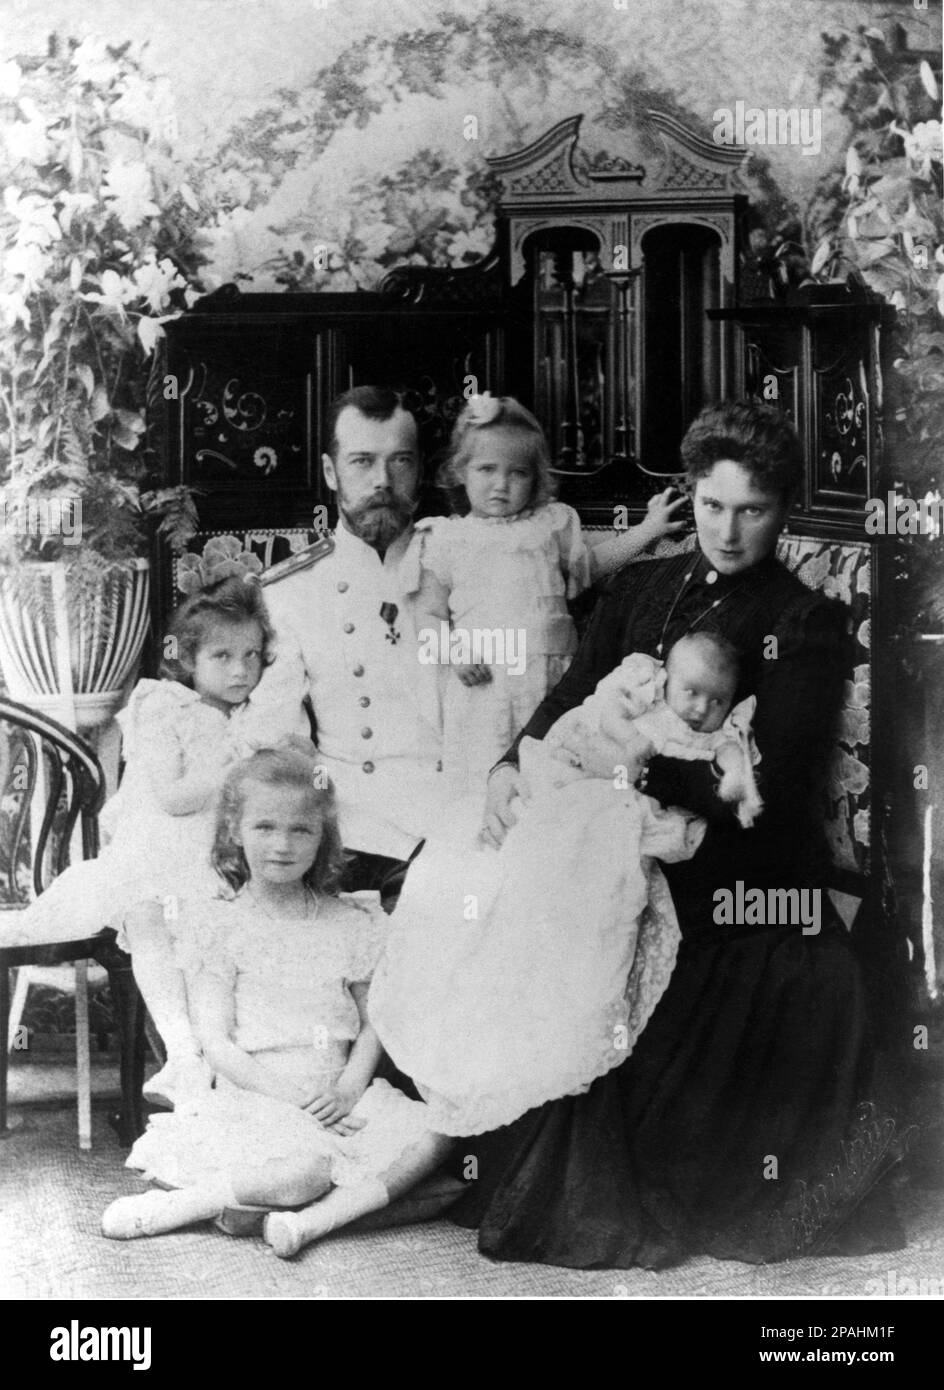 1901 : lo zar russo NICOLA II di Russia (1868–1918) con la moglie Empress Tsarina ALEXANDRA FYODOROVNA (Feodorovna, Alix d'Assia e dal Reno 1872 - morto il giorno 17 luglio 1918 con tutta la famiglia reale ). In questa foto con le figlie : MARIA ( Maria , nata nel 1899 ), TATIANA ( nata nel 1897 ), ANASTASIA ( nata nel 1901 ) nelle mani di Tsarina e OLGA (Nato nel 1895 )- STORIA foto storiche - foto storica - ritratto - ritratto - nobilta' - nobiltà - nobili - nobile - BELLE EPOQUE - RUSSIA - ZAR - Zar - Tsarine - TZARINA - ZARINA - RUSSIA - ROMANOFF - ROMANOV - pizzo - gioielli Foto Stock